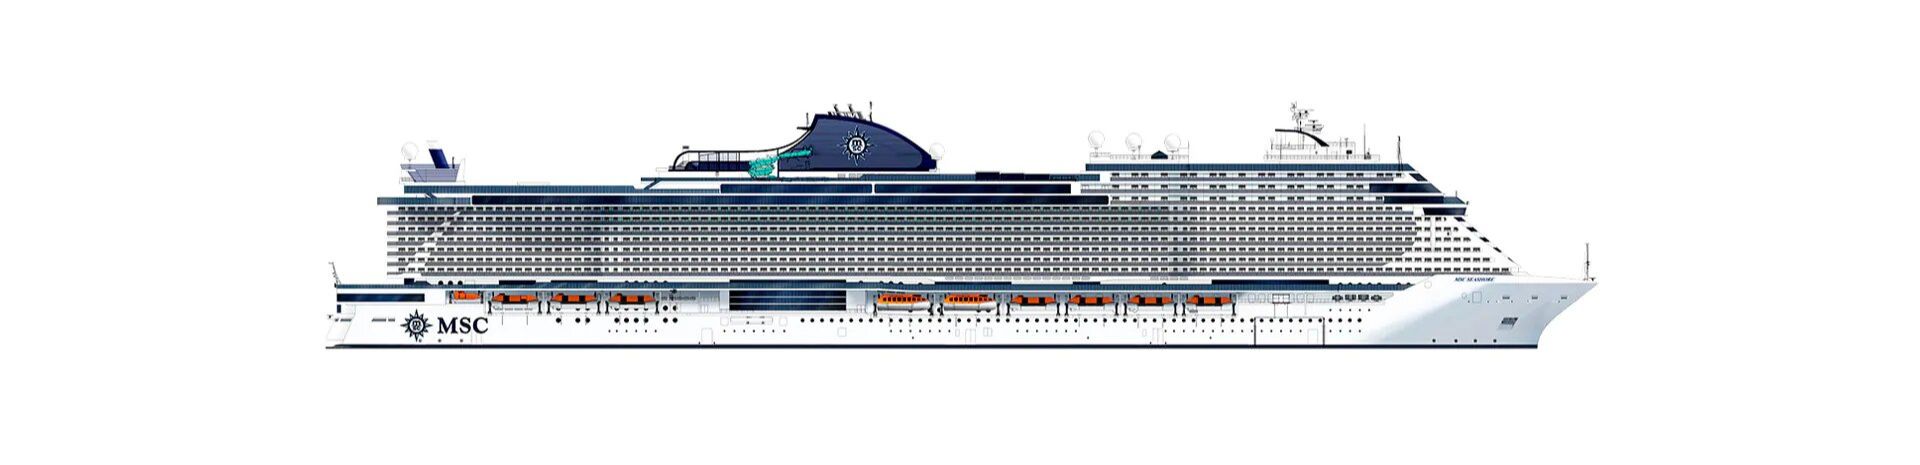 silhouette du nouveau navire msc seascape